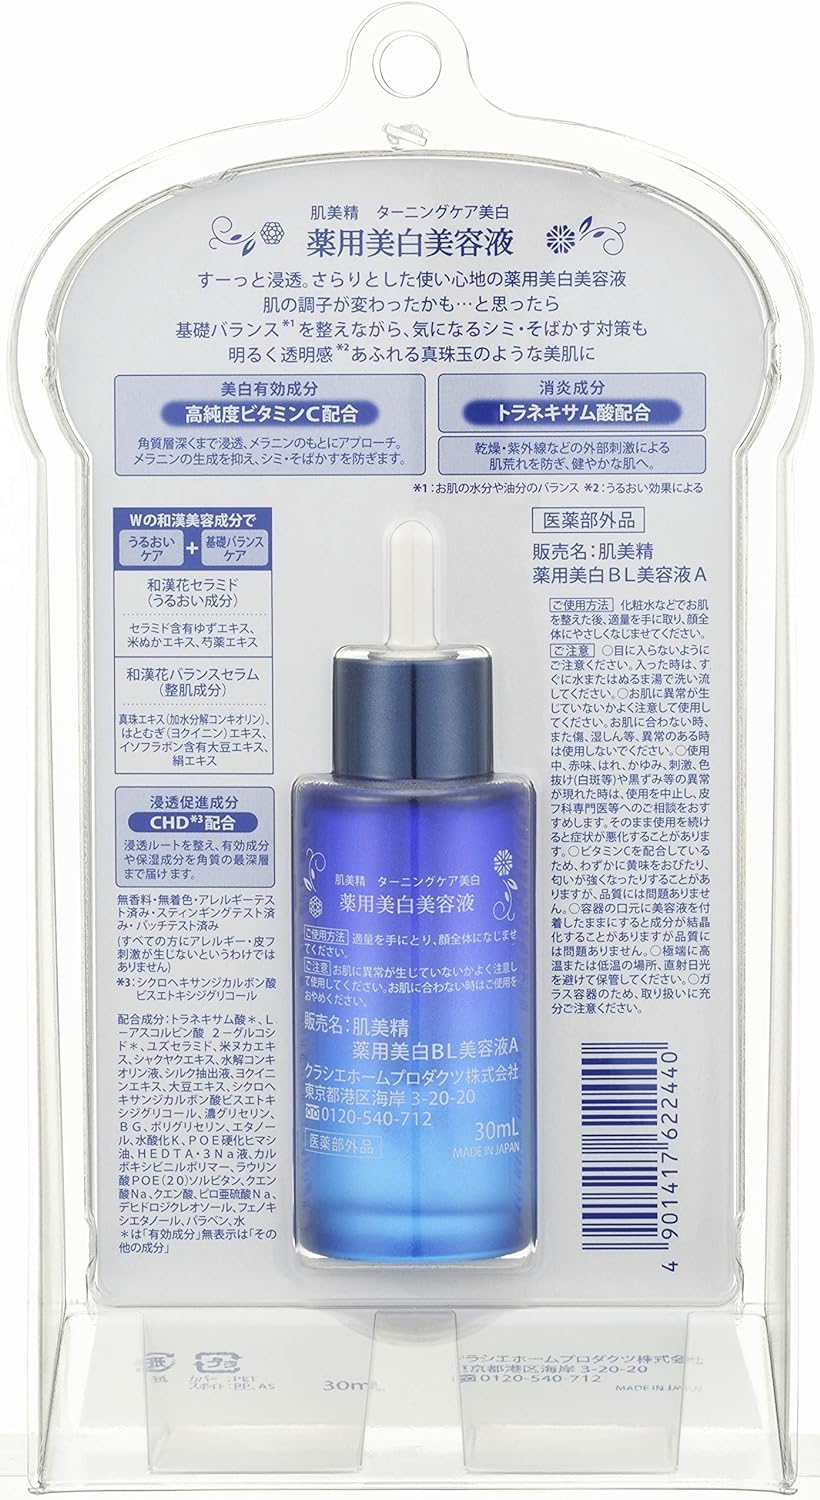 肌美精(HADABISEI) ターニングケア美白 薬用美白美容液の商品画像3 